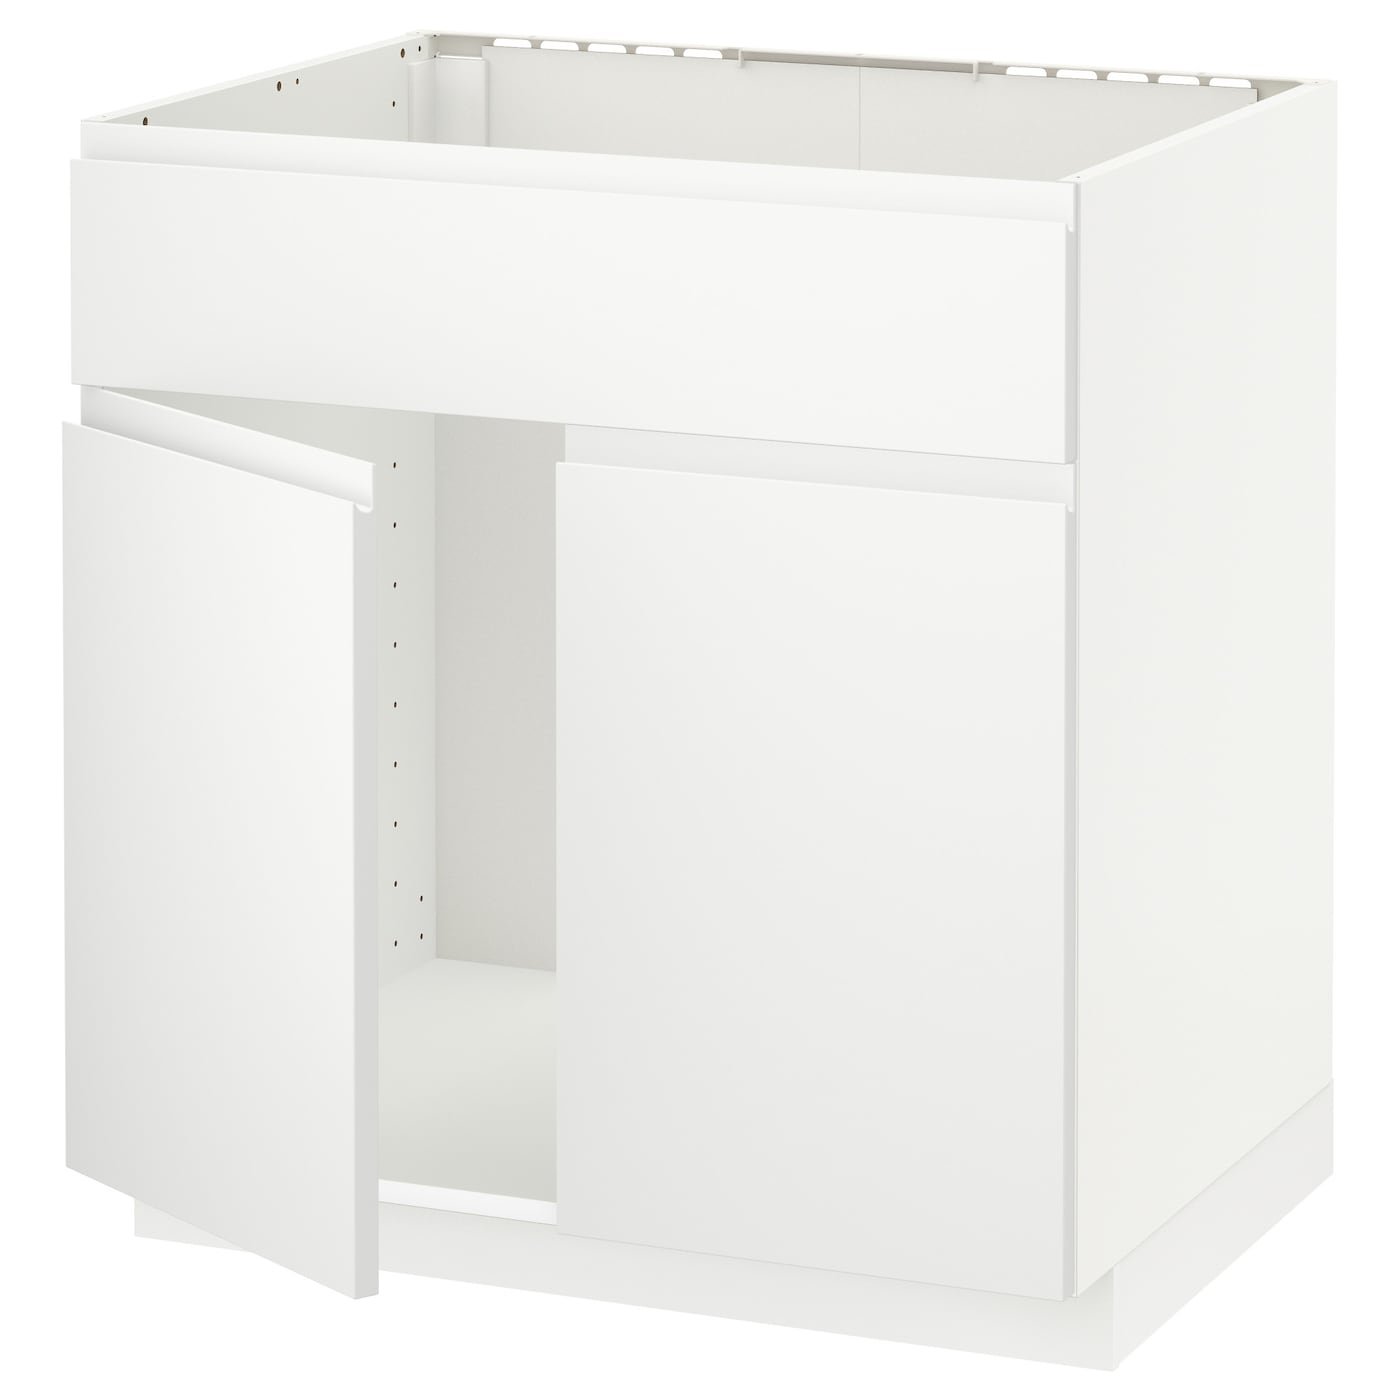 Напольный кухонный шкаф  - IKEA METOD, 88x62x80см, белый, МЕТОД ИКЕА